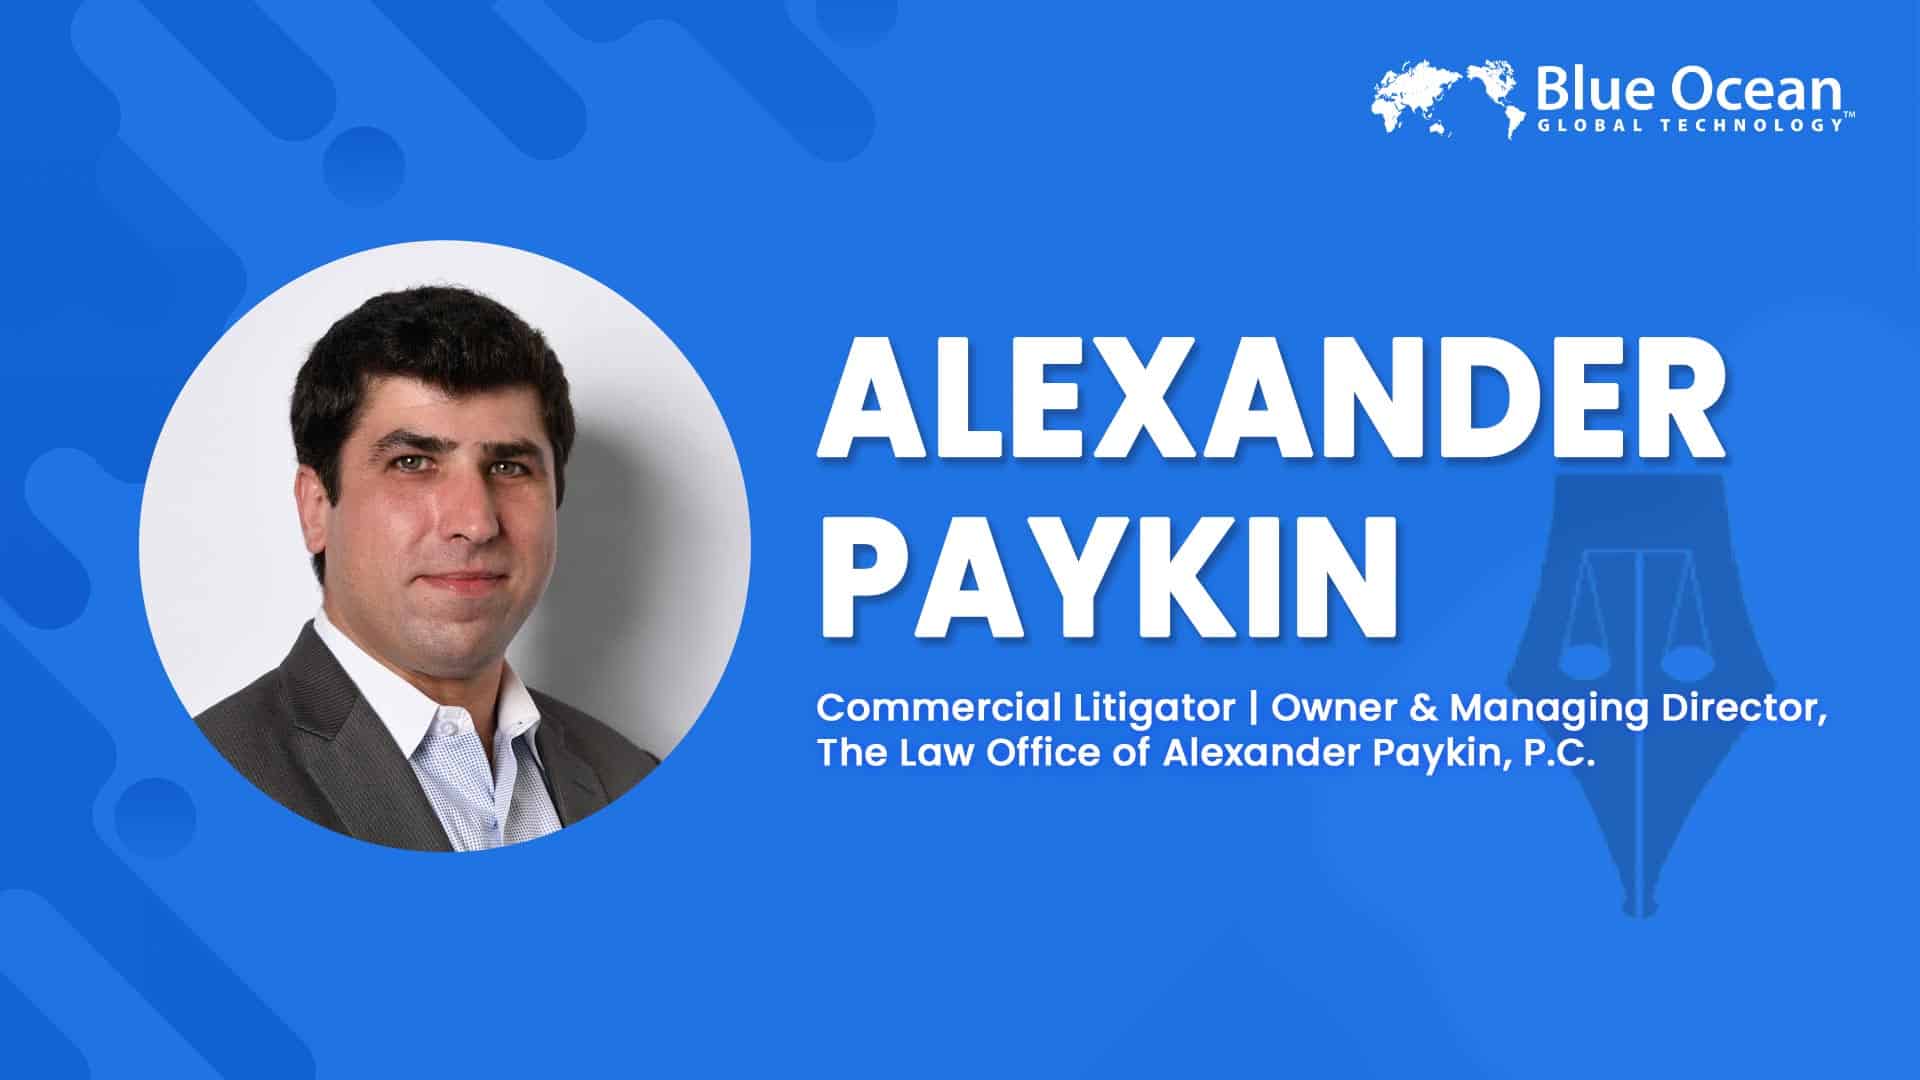 Blue Ocean Global Technology Interviews Alexander Paykin